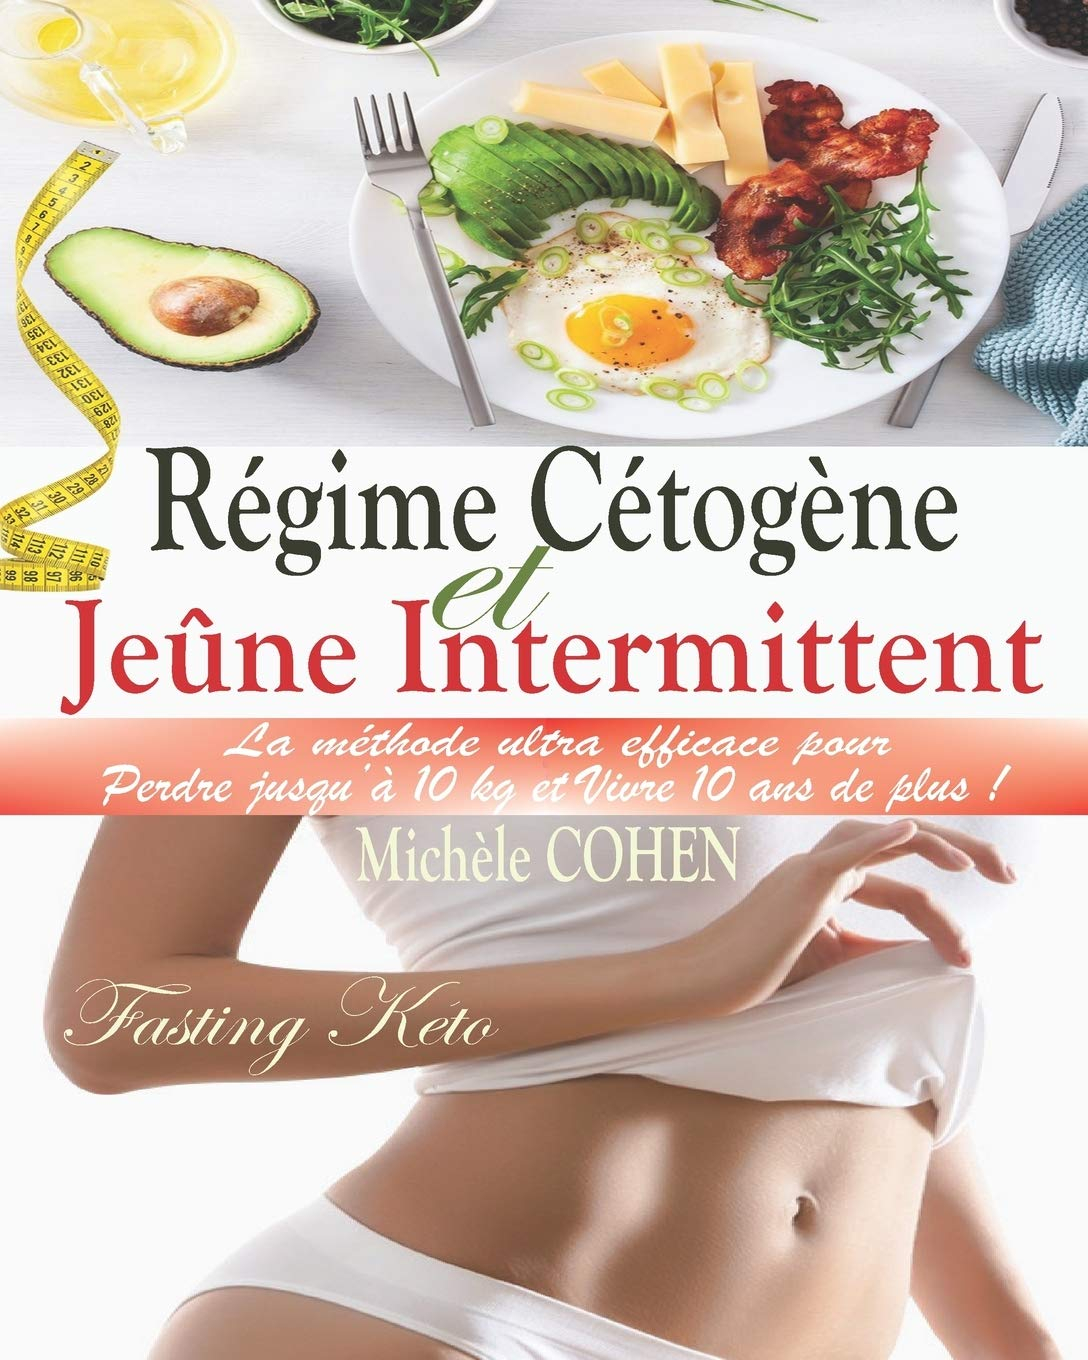 Régime Cétogène et Jeûne Intermittent (Fasting Keto): La méthode ultra efficace pour perdre 10 kg et